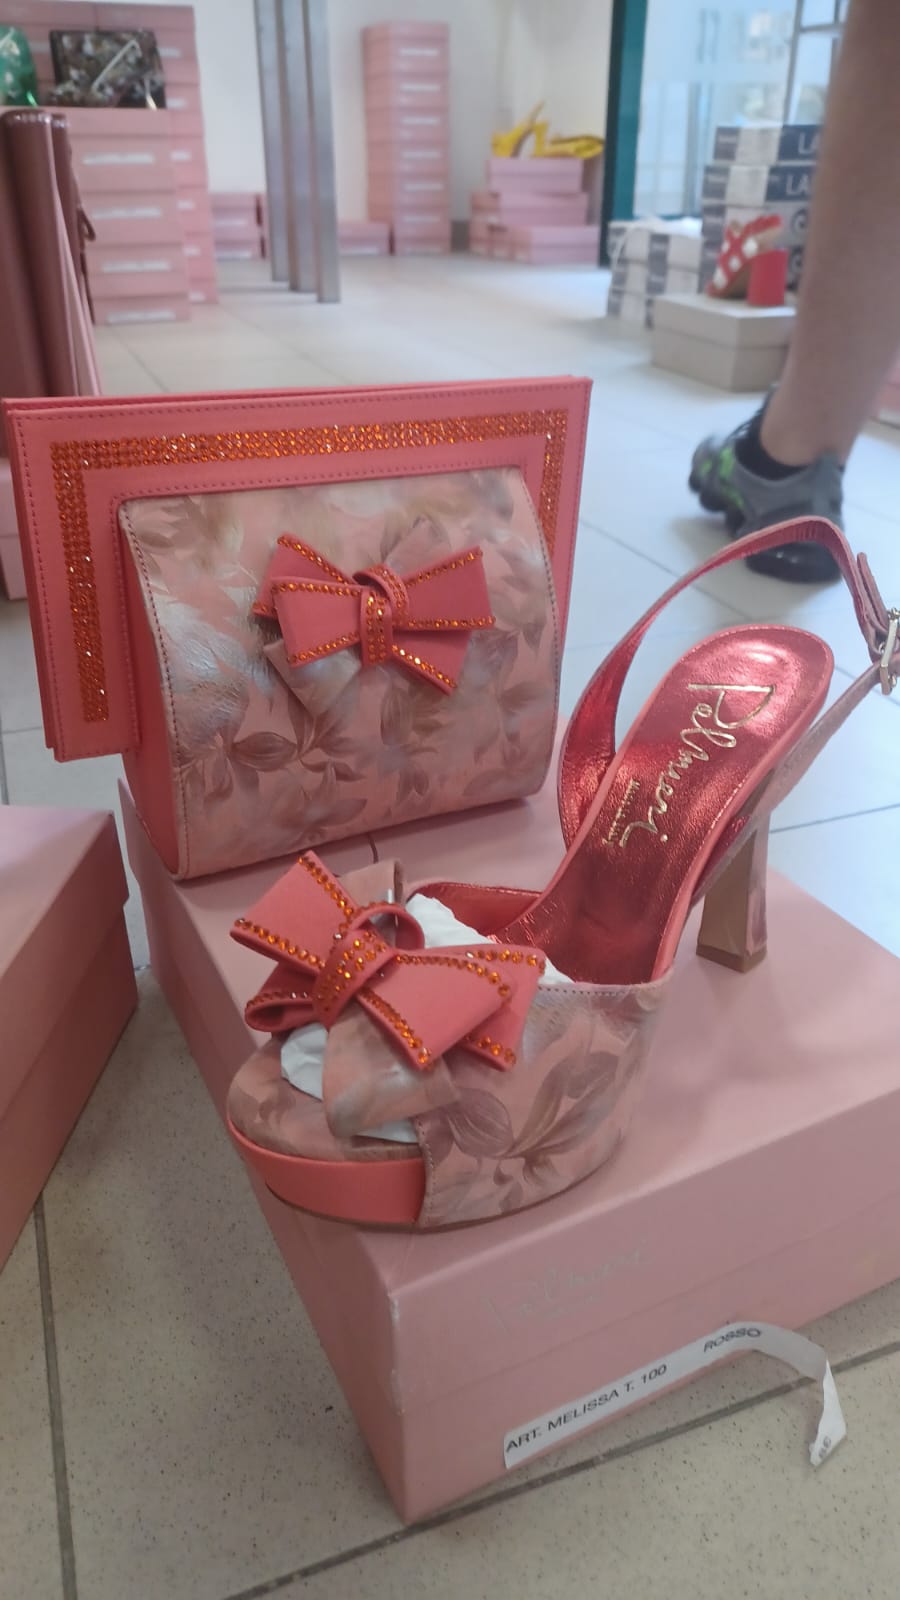 Luxury Italian shoe and bag - Godshandfashion - Coral EUR 38/US 71/2-8